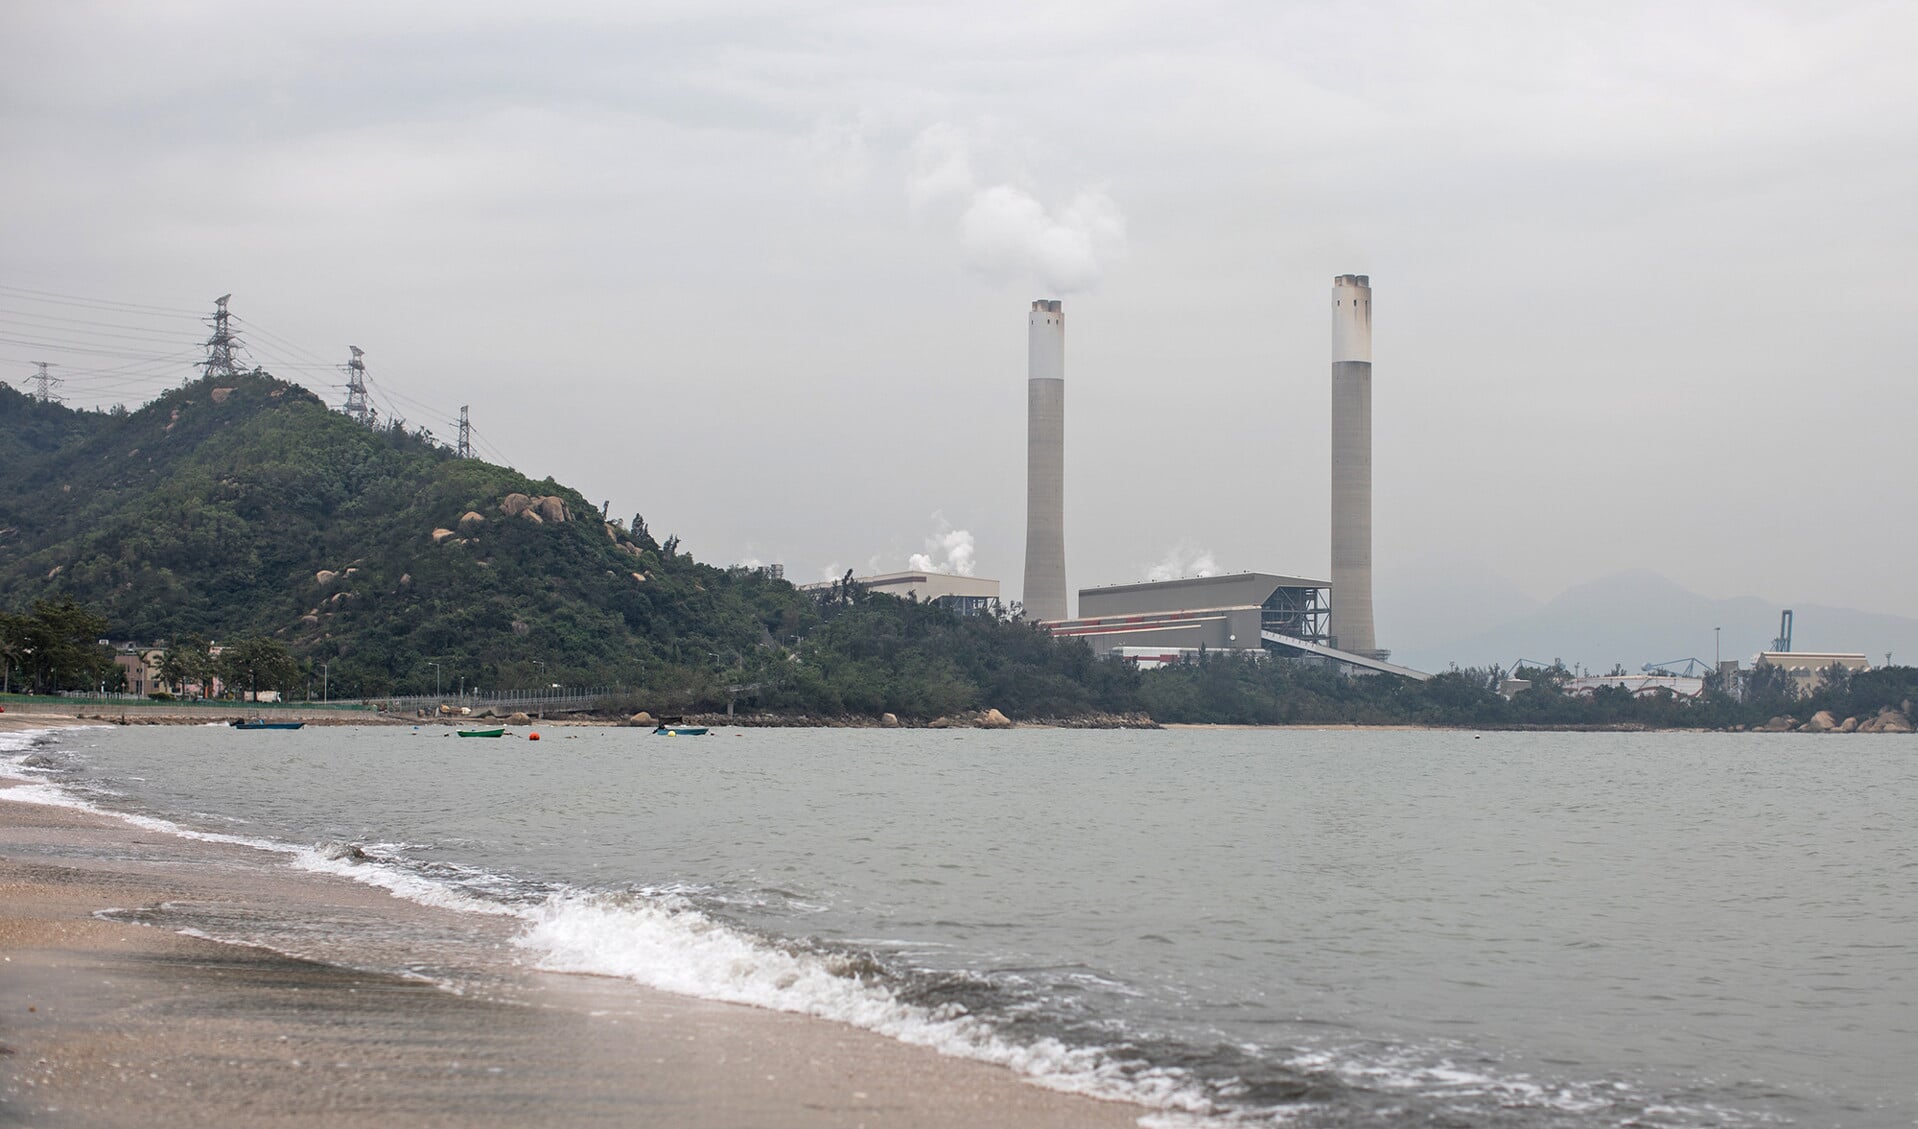 Kolencentrale nabij Hongkong. Ook al zet China in op duurzame energie, het is nog veruit de grootste kolenbrander in de wereld.